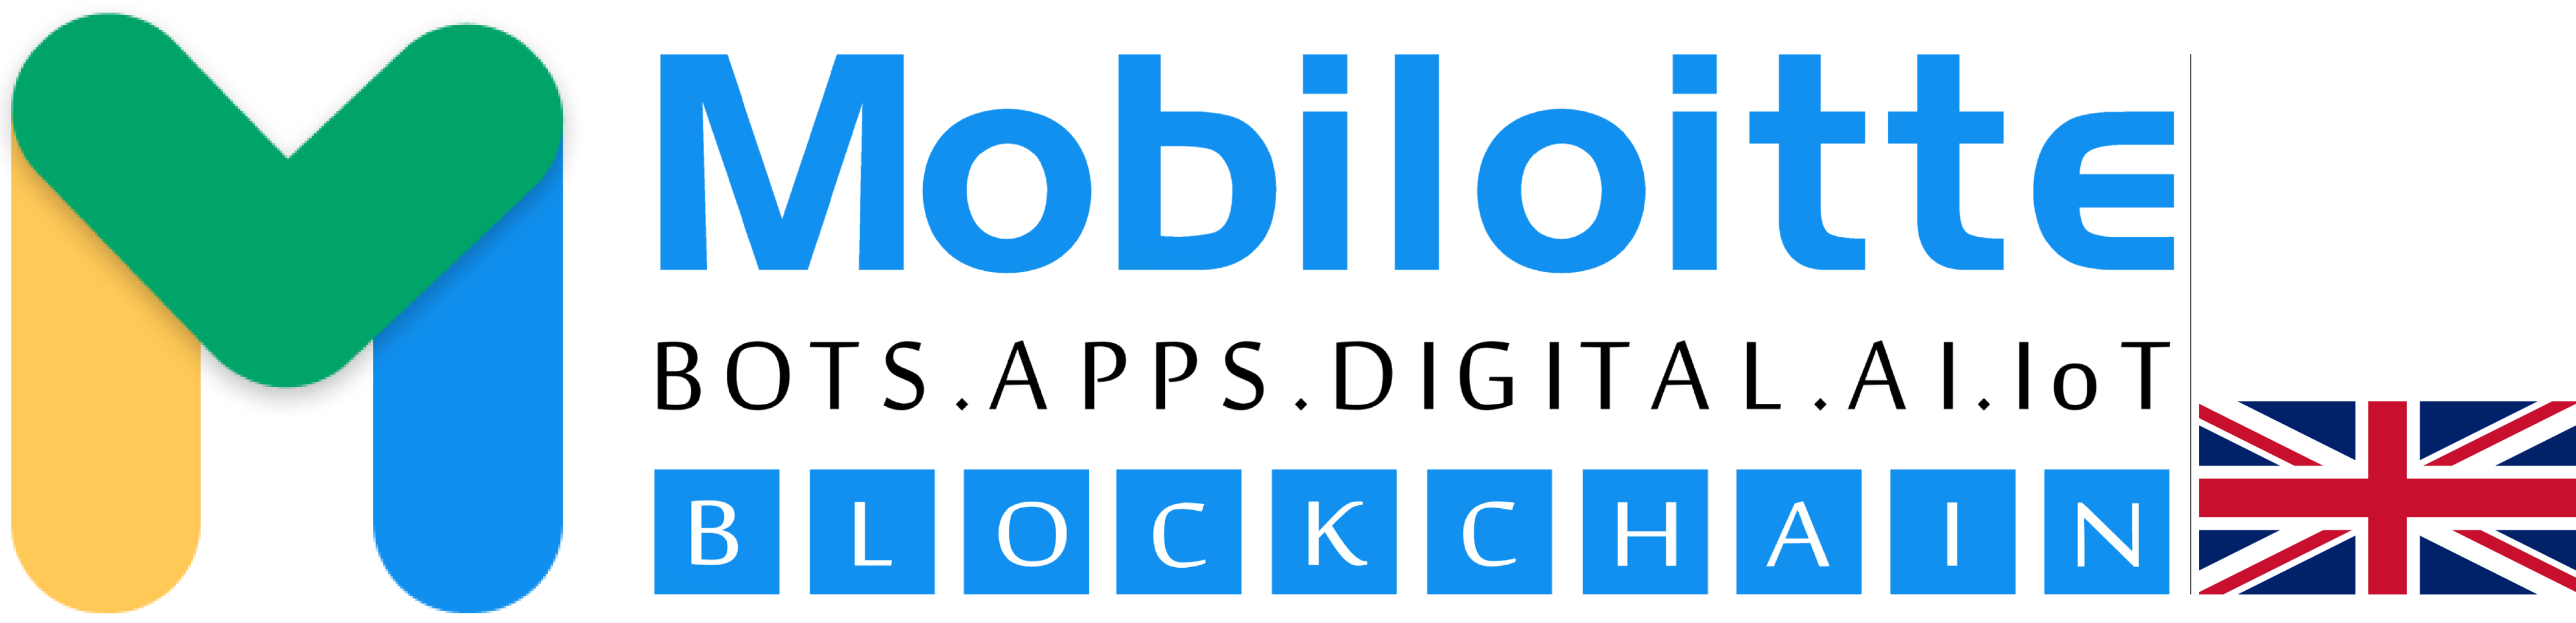 Mobiloite UK logo